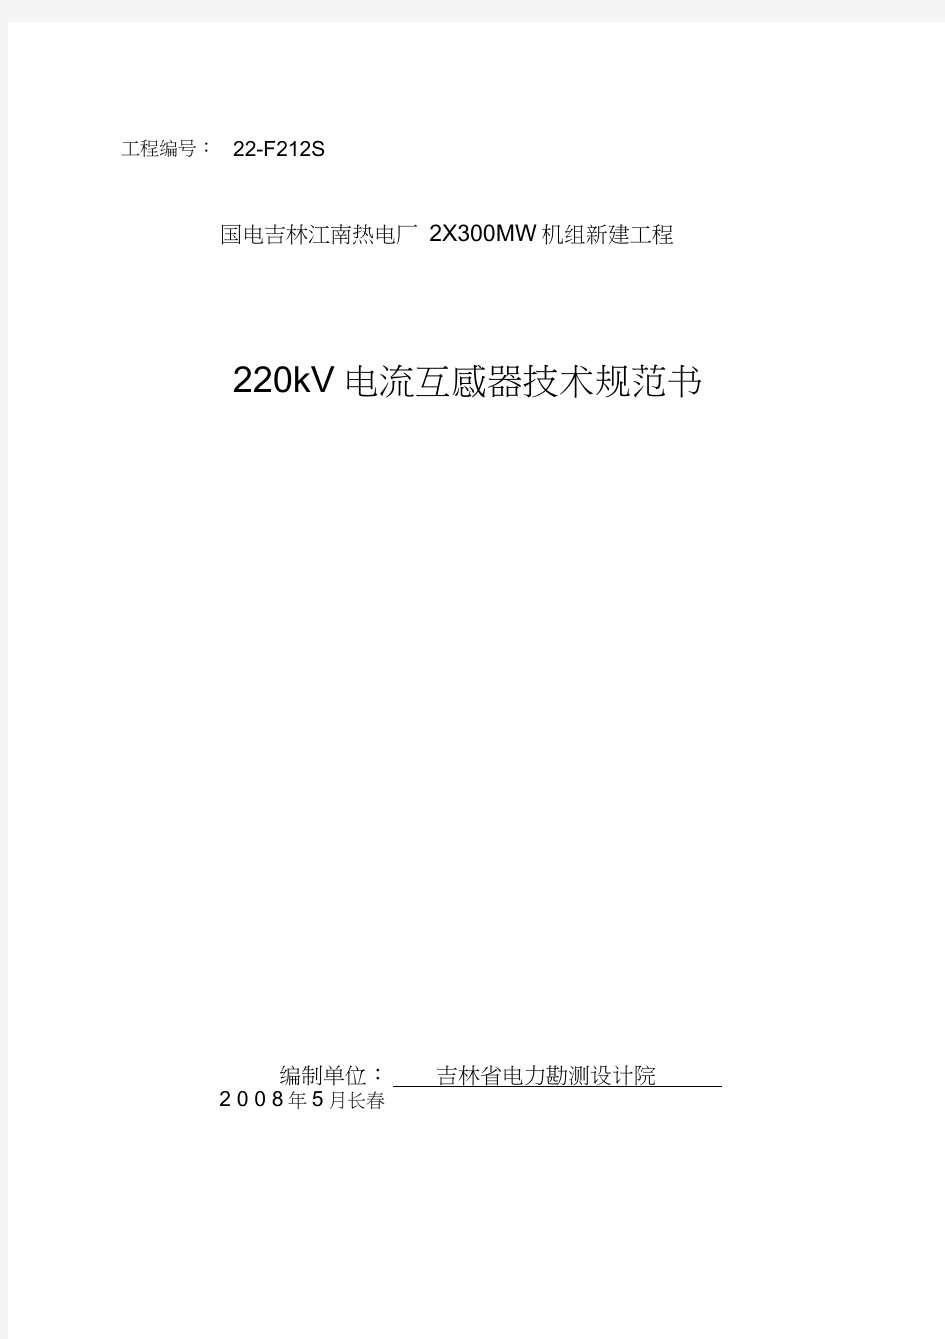 220kV电流互感器技术规范书